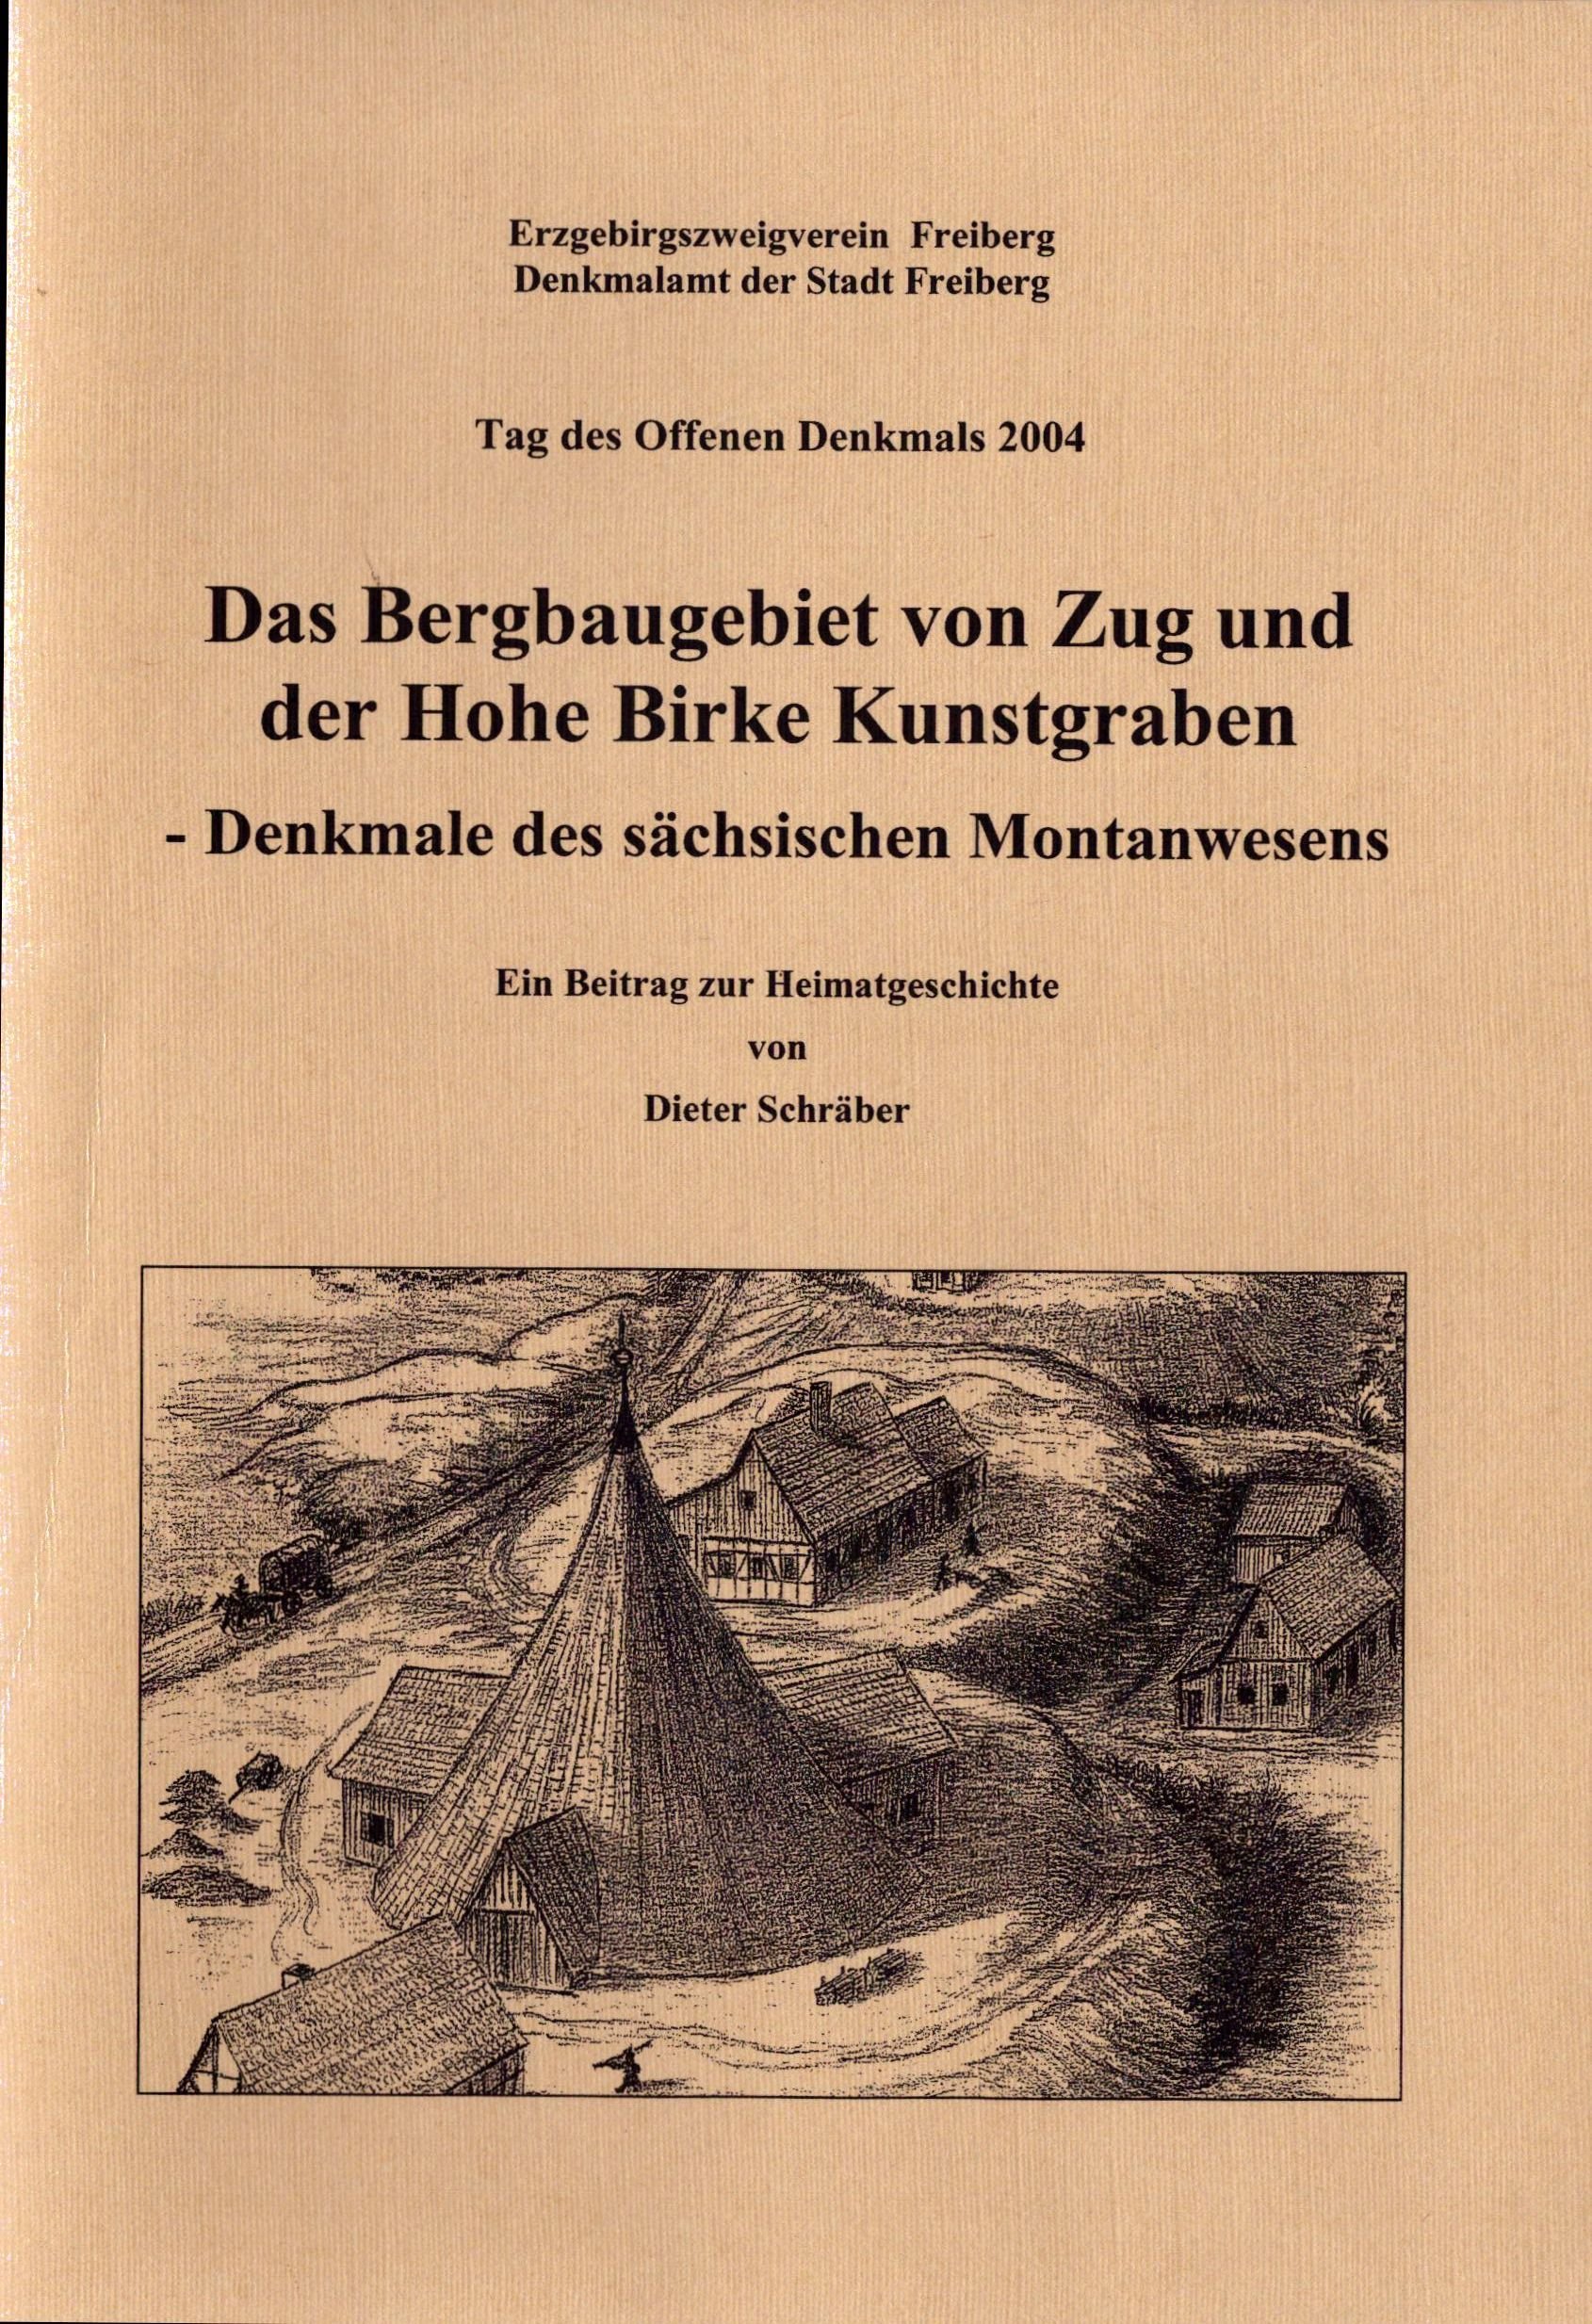 Das Bergbaugebiet von Zug und der Hohe Birke Kunstgraben (Archiv SAXONIA-FREIBERG-STIFTUNG CC BY-NC-SA)